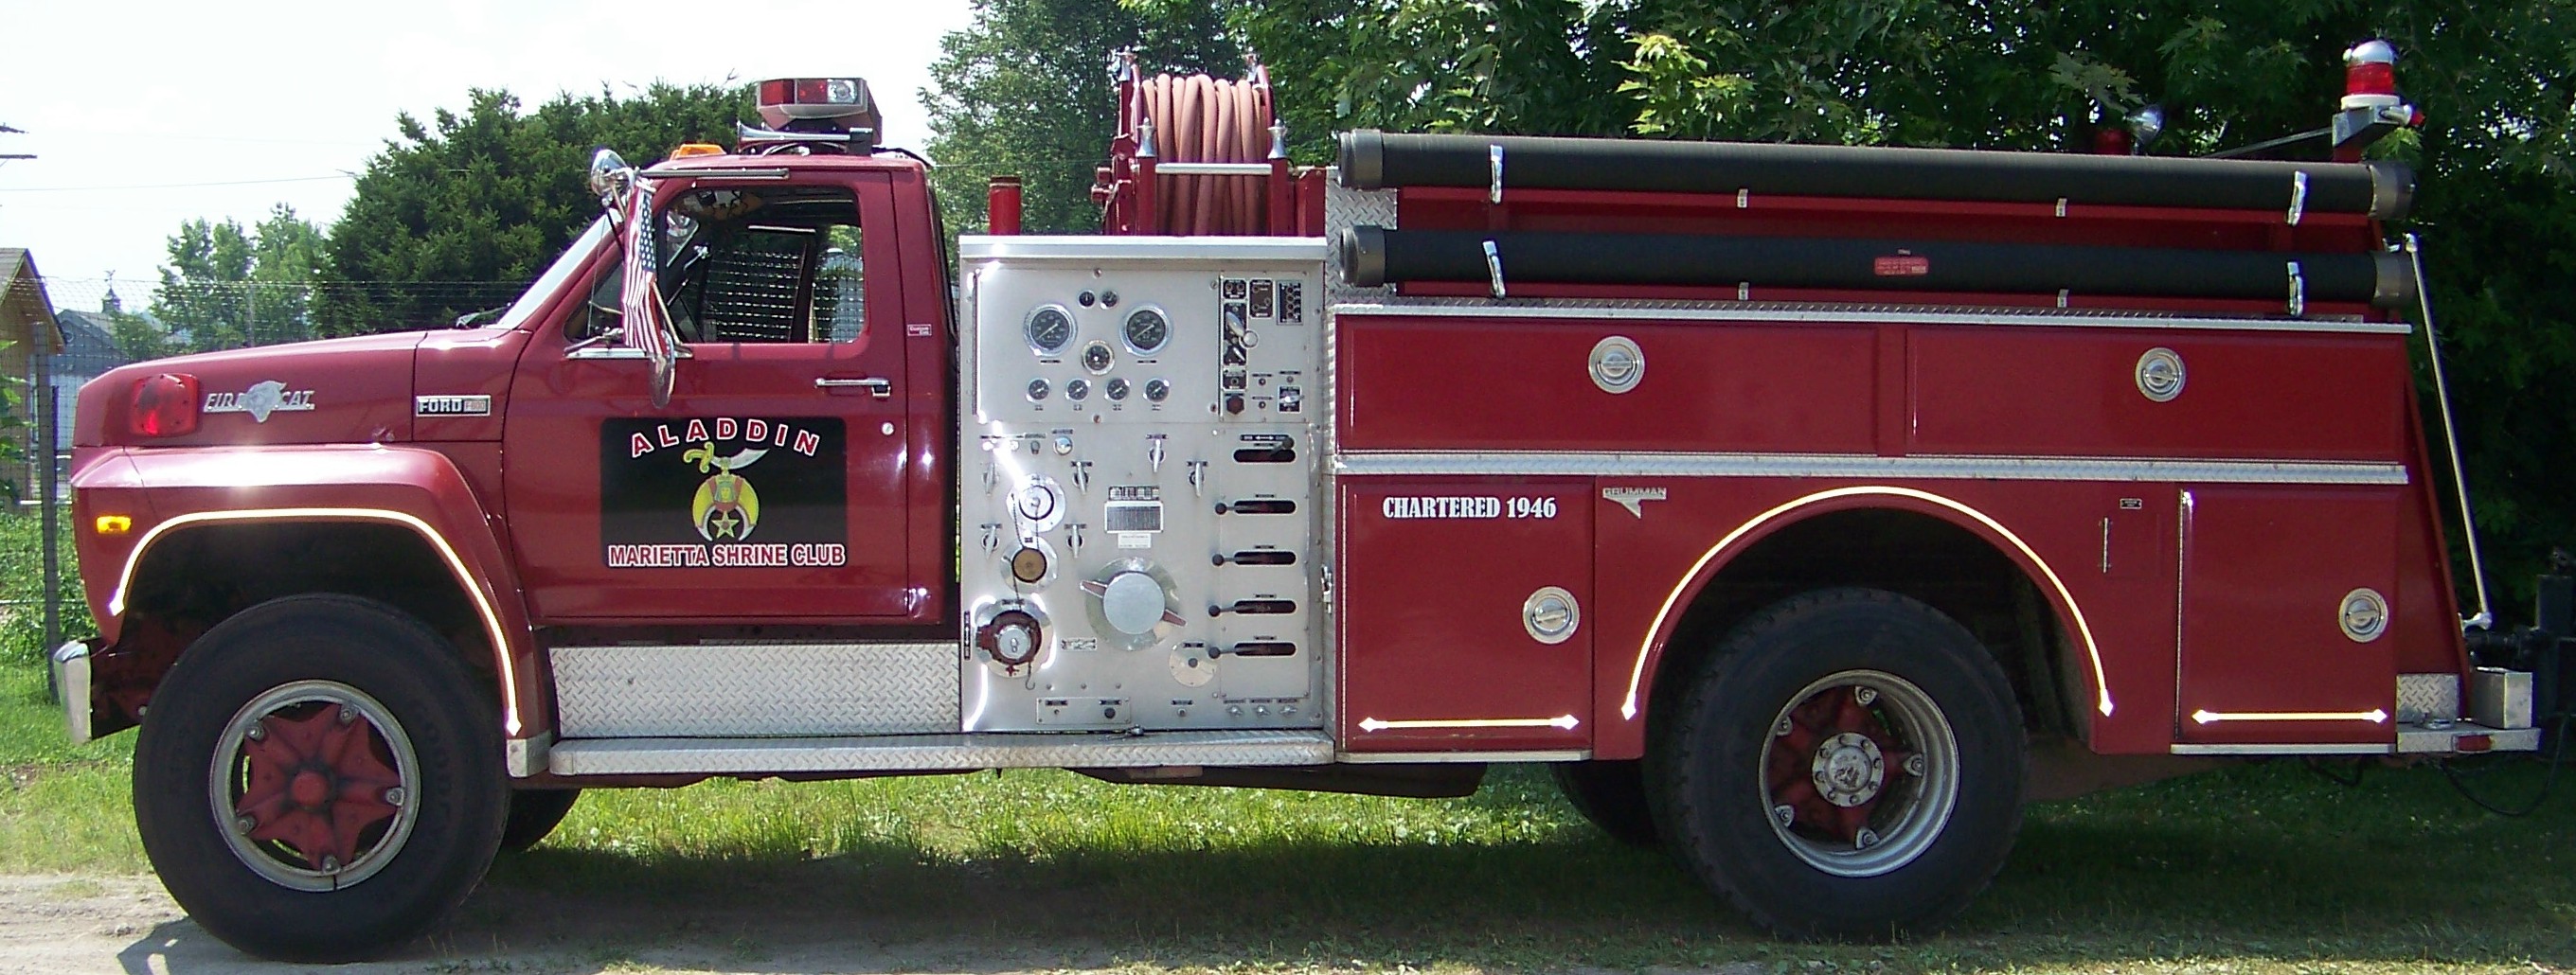 Marietta Shrine Club Fire Truck